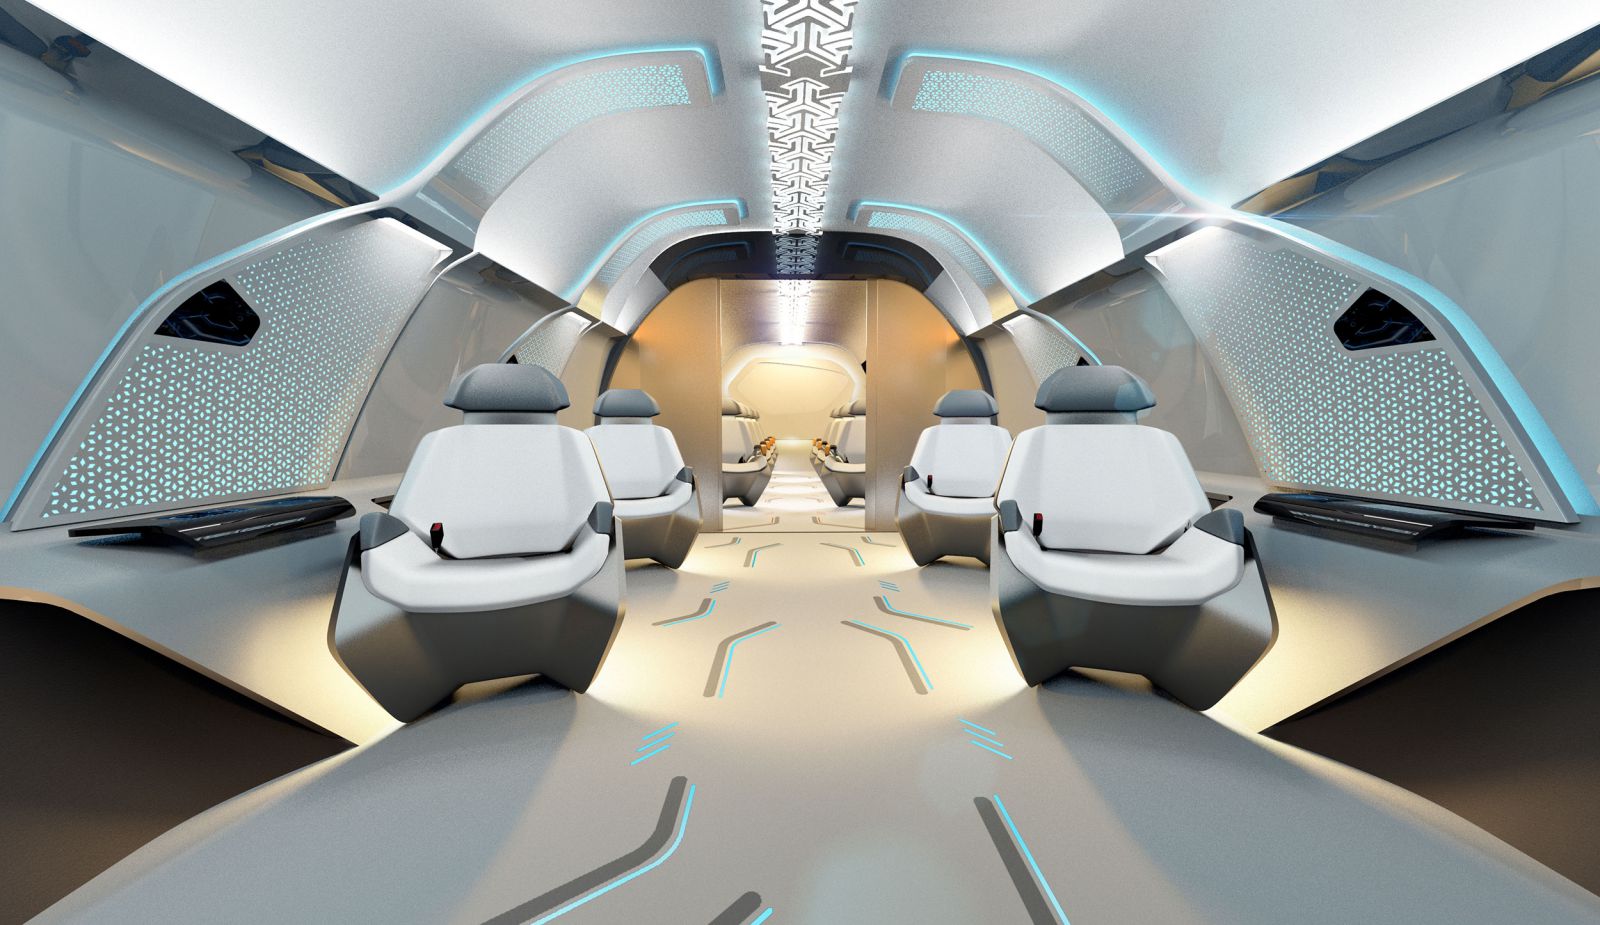 hyperloop seats in capsule